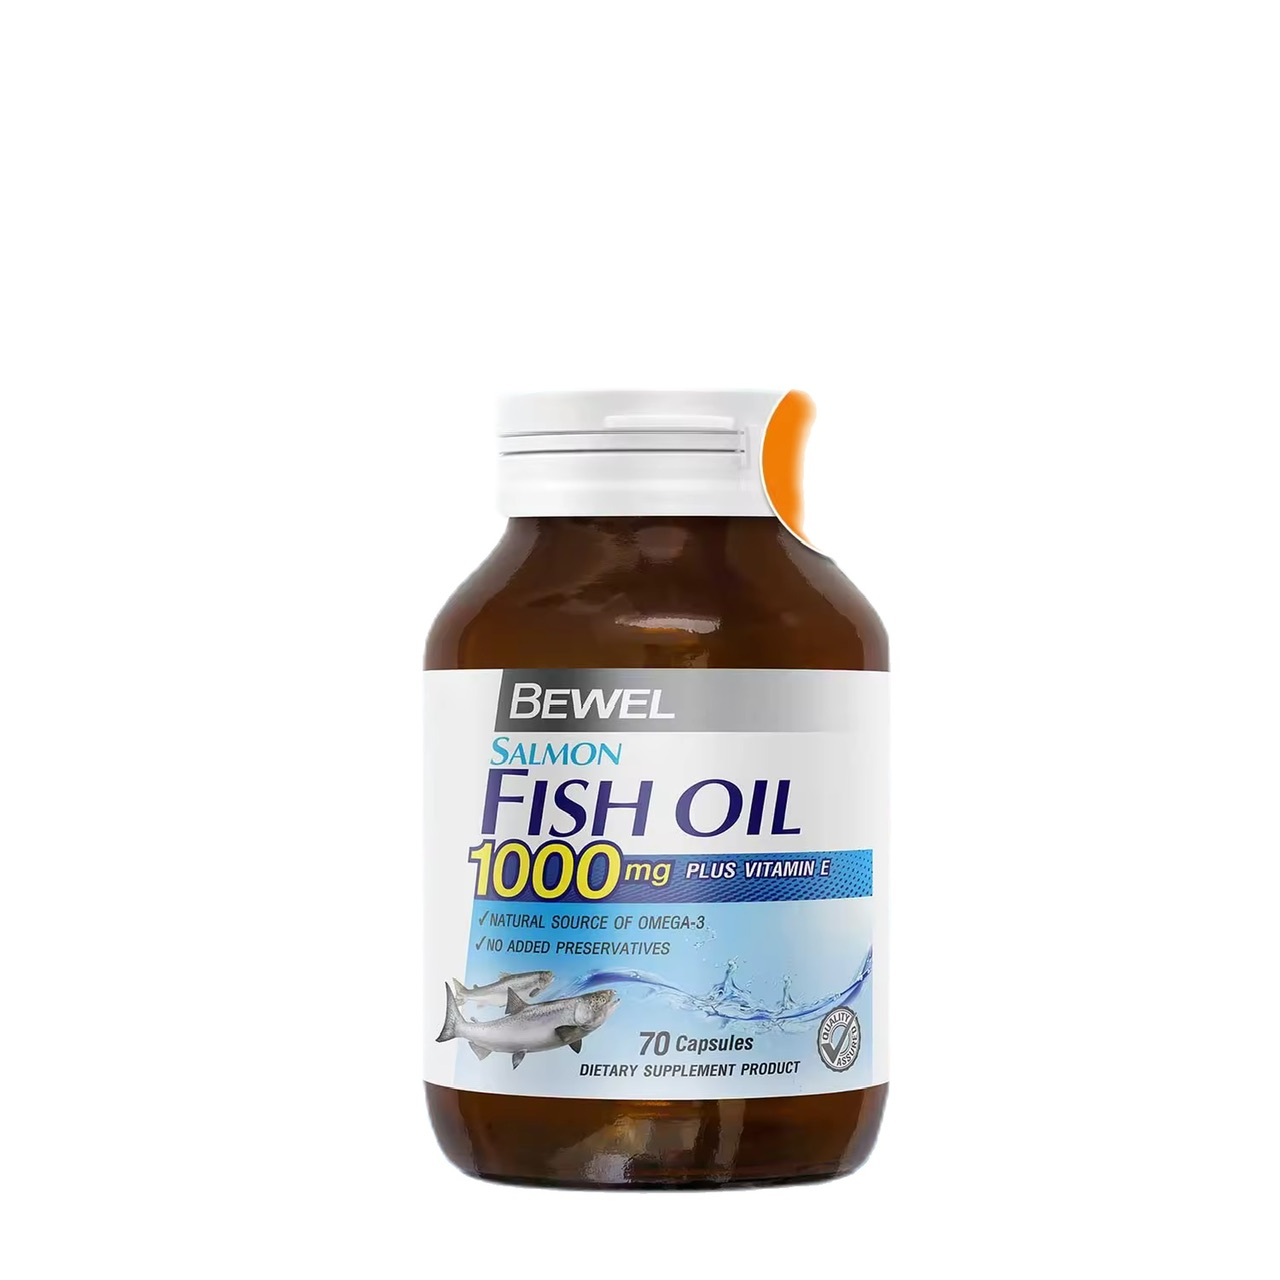 Bewel Salmon Fish Oil (70 เม็ด) - บีเวล น้ำมันปลาแซลมอน 1,000 มก. ผสมวิตามินอี โอเมก้า 3 ( ขวดใหญ่ 70 ซอฟเจล )